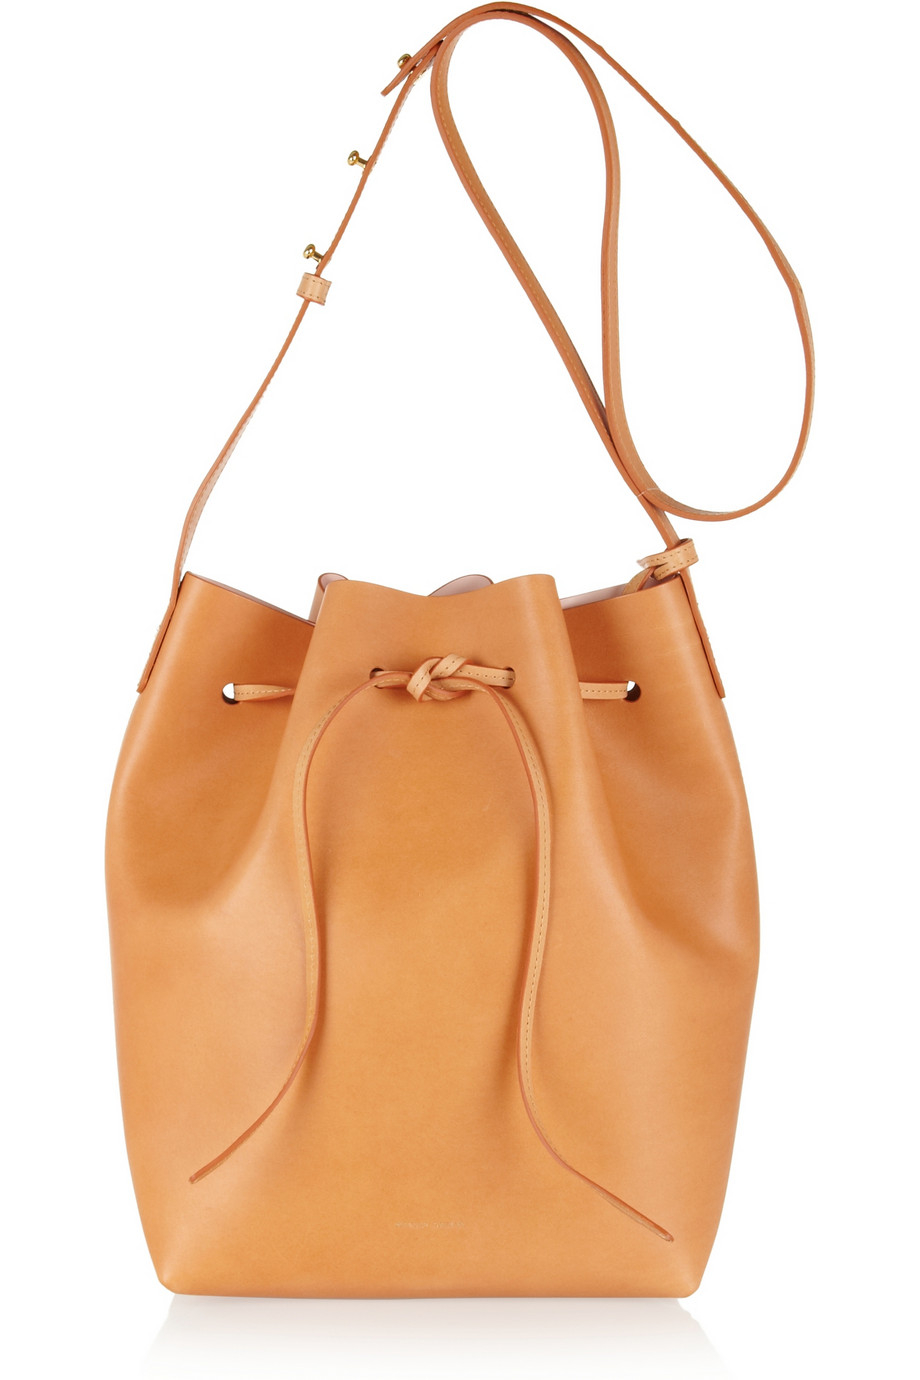 Mansur gavriel Drawstring Leather Shoulder Bag in Brown | Lyst